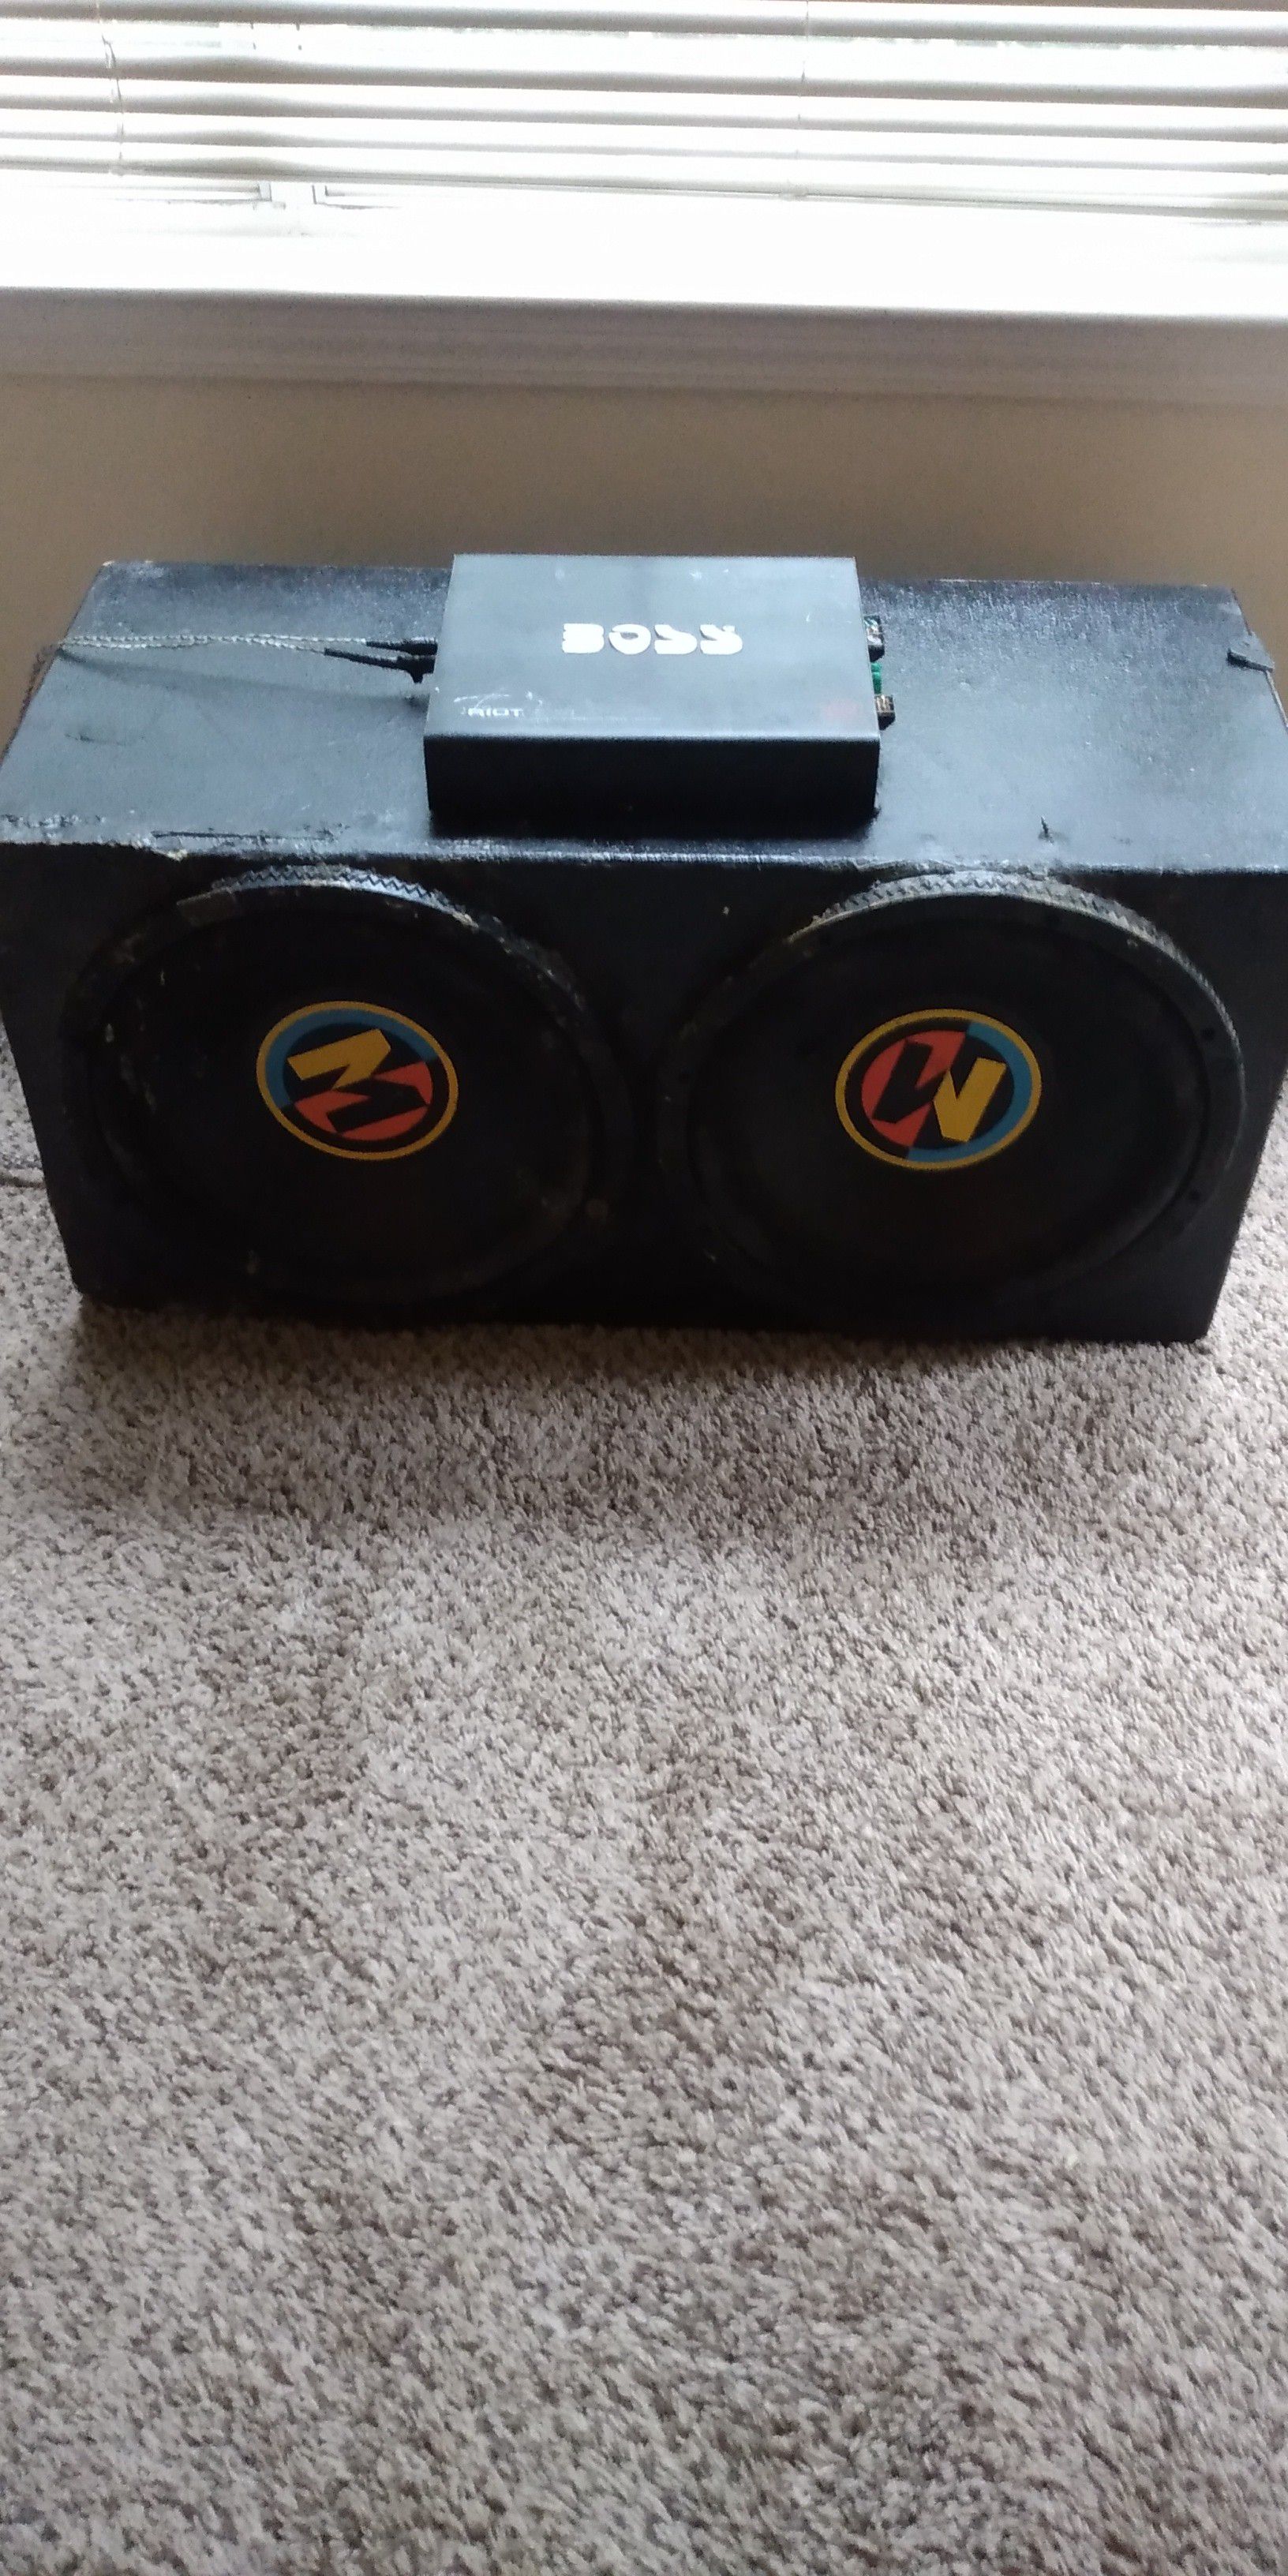 2 "15 Memphis audio speakers